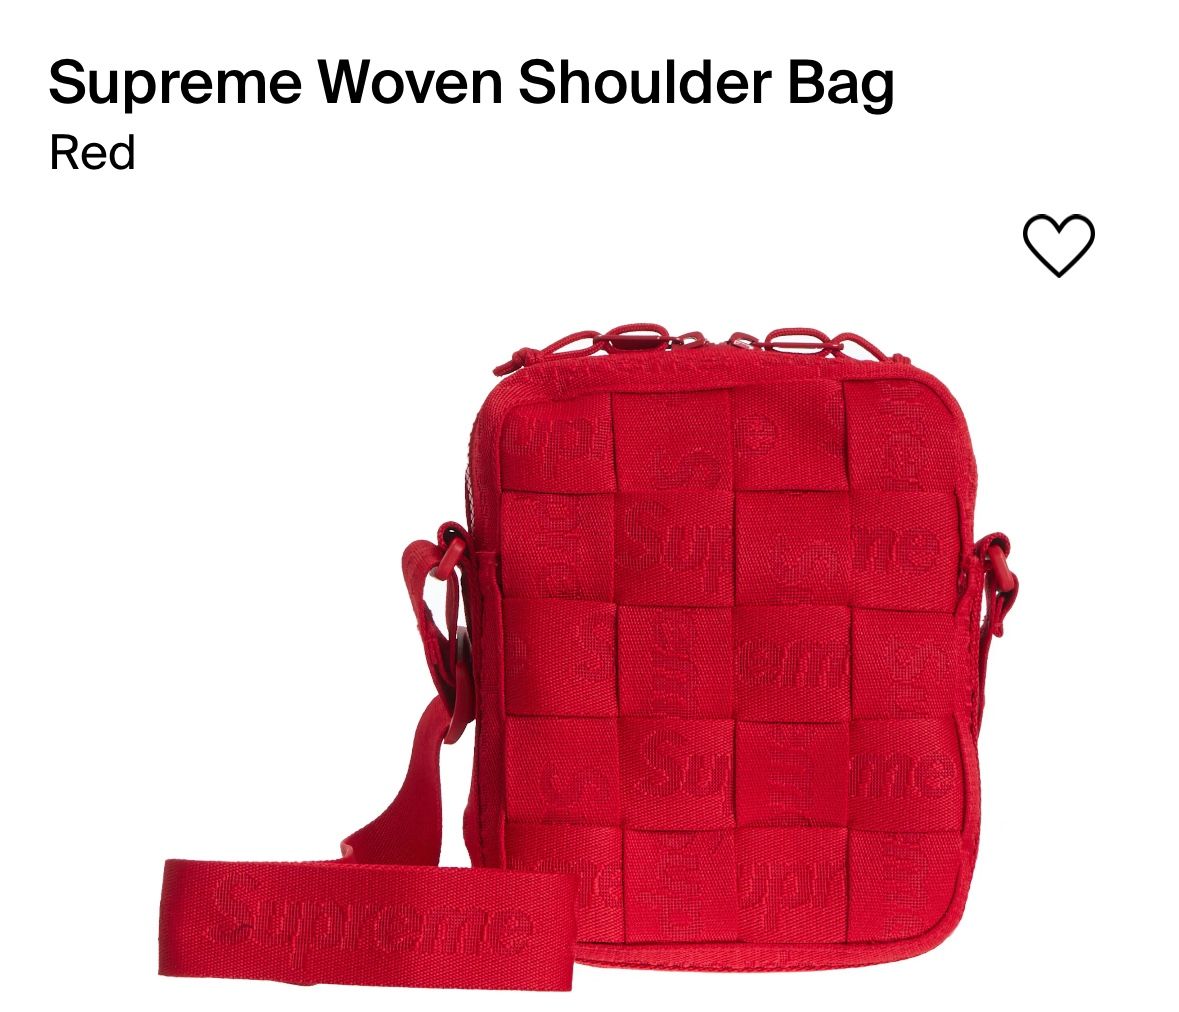 Supreme Woven Shoulder Bag Red 